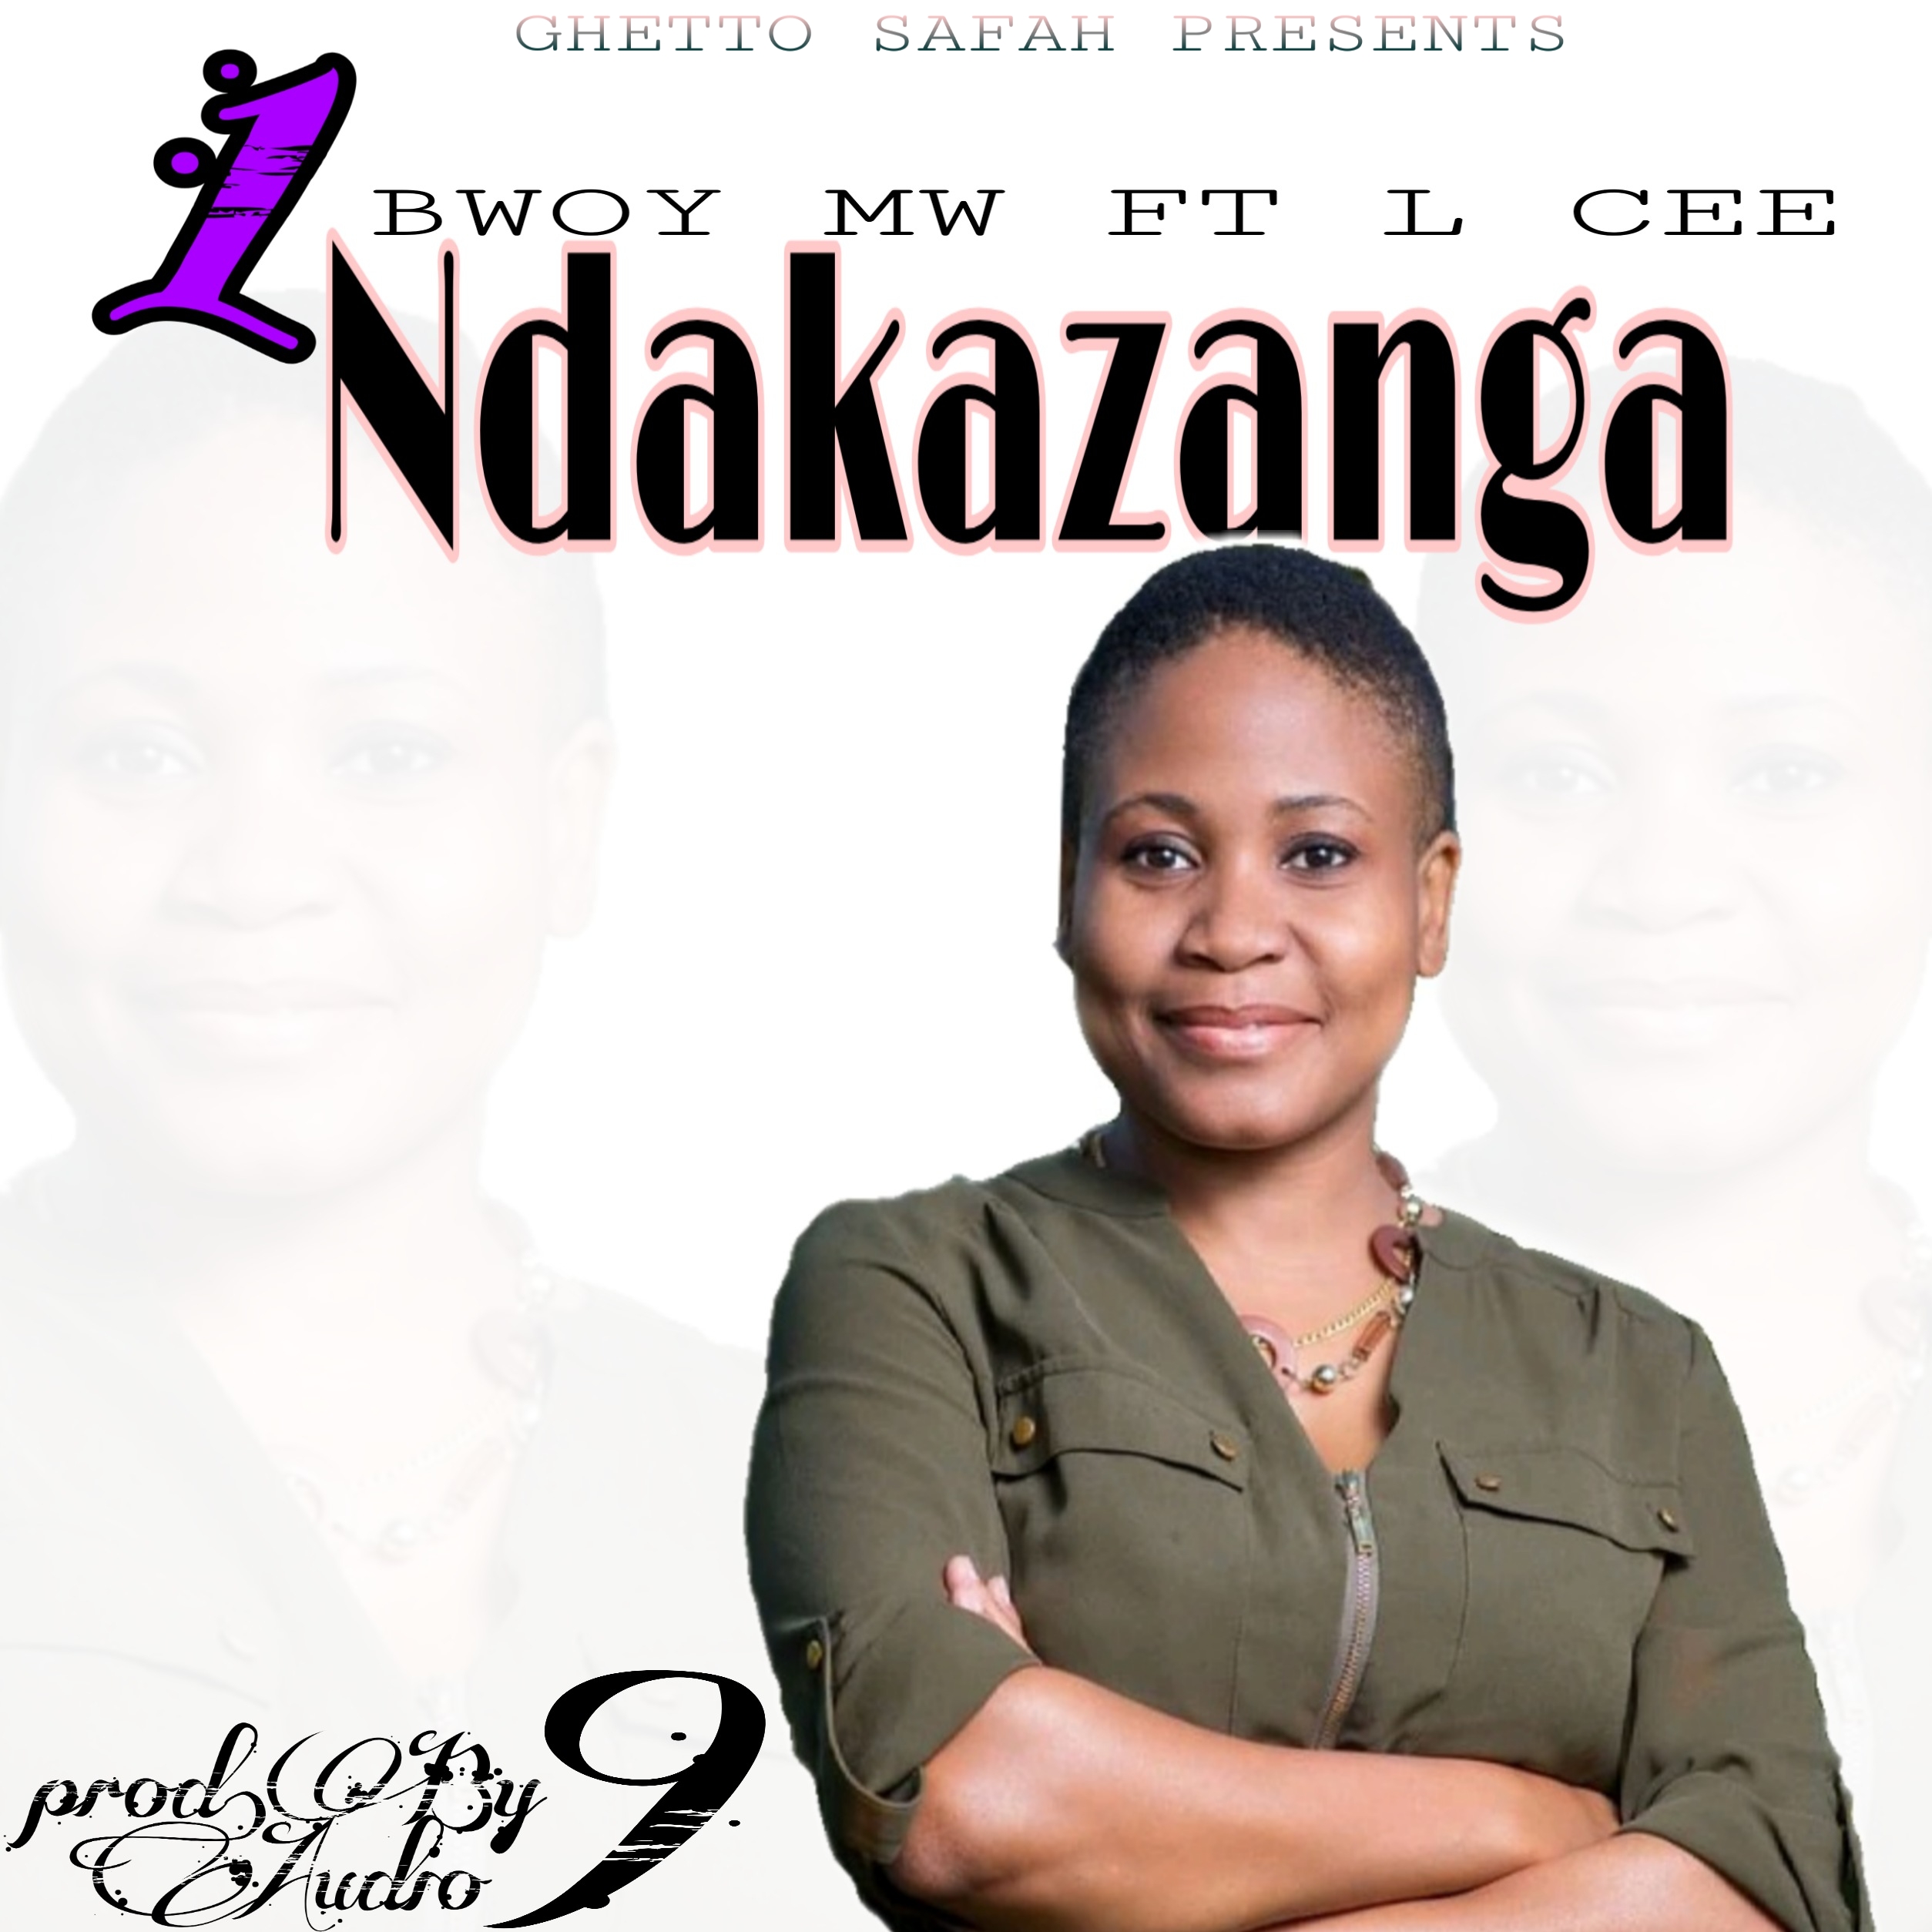 L Cee-1 Ndakazanga ft Bwoy mw (prod by AUDIO 9)